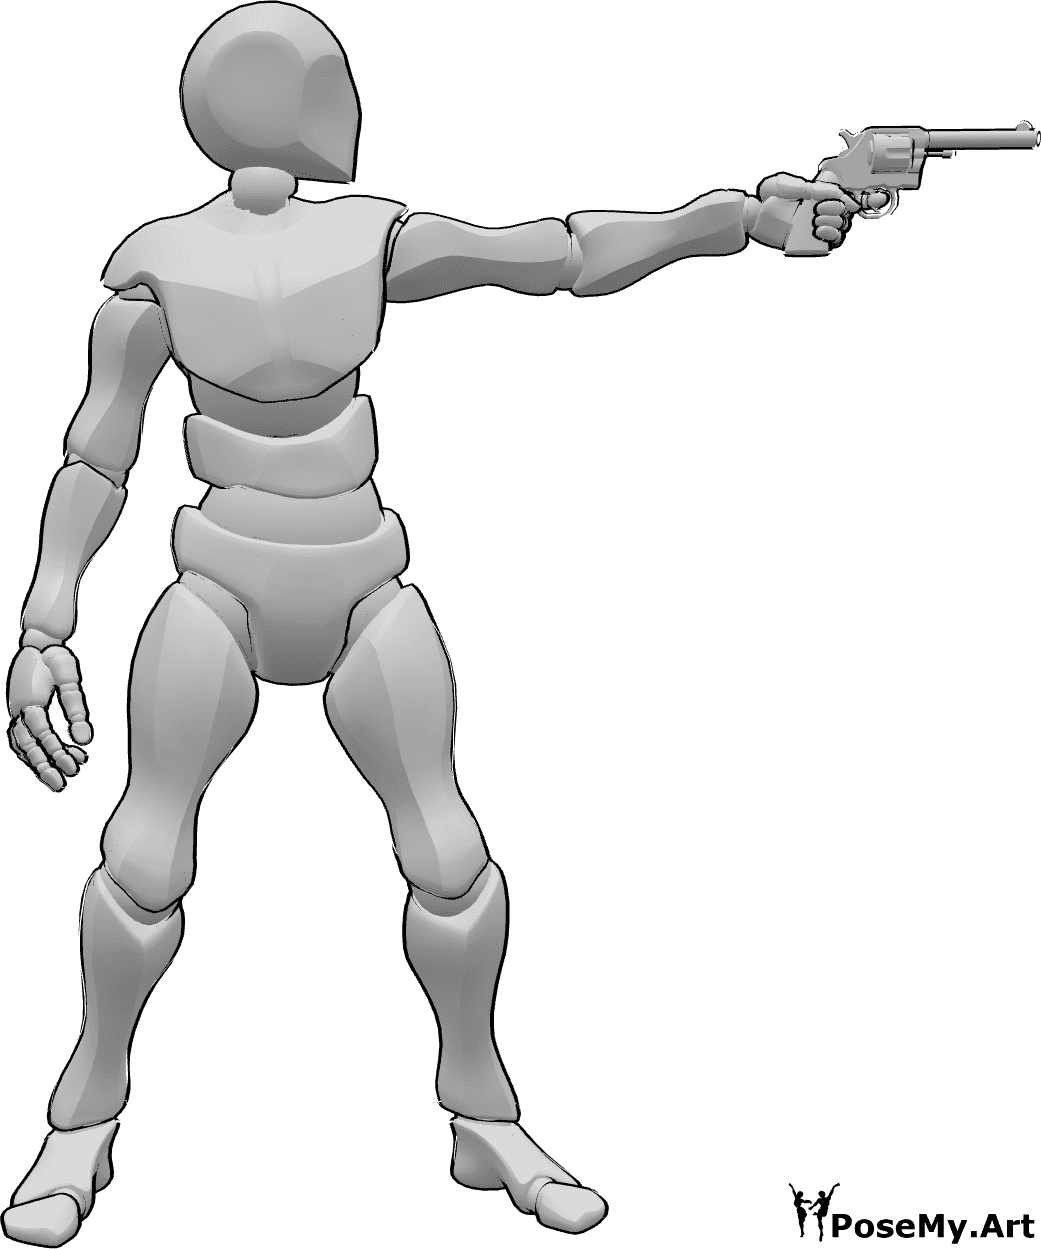 Posen-Referenz- Männliche Zielscheibenpose - Das Männchen zielt mit seiner Waffe auf die Zielscheibe